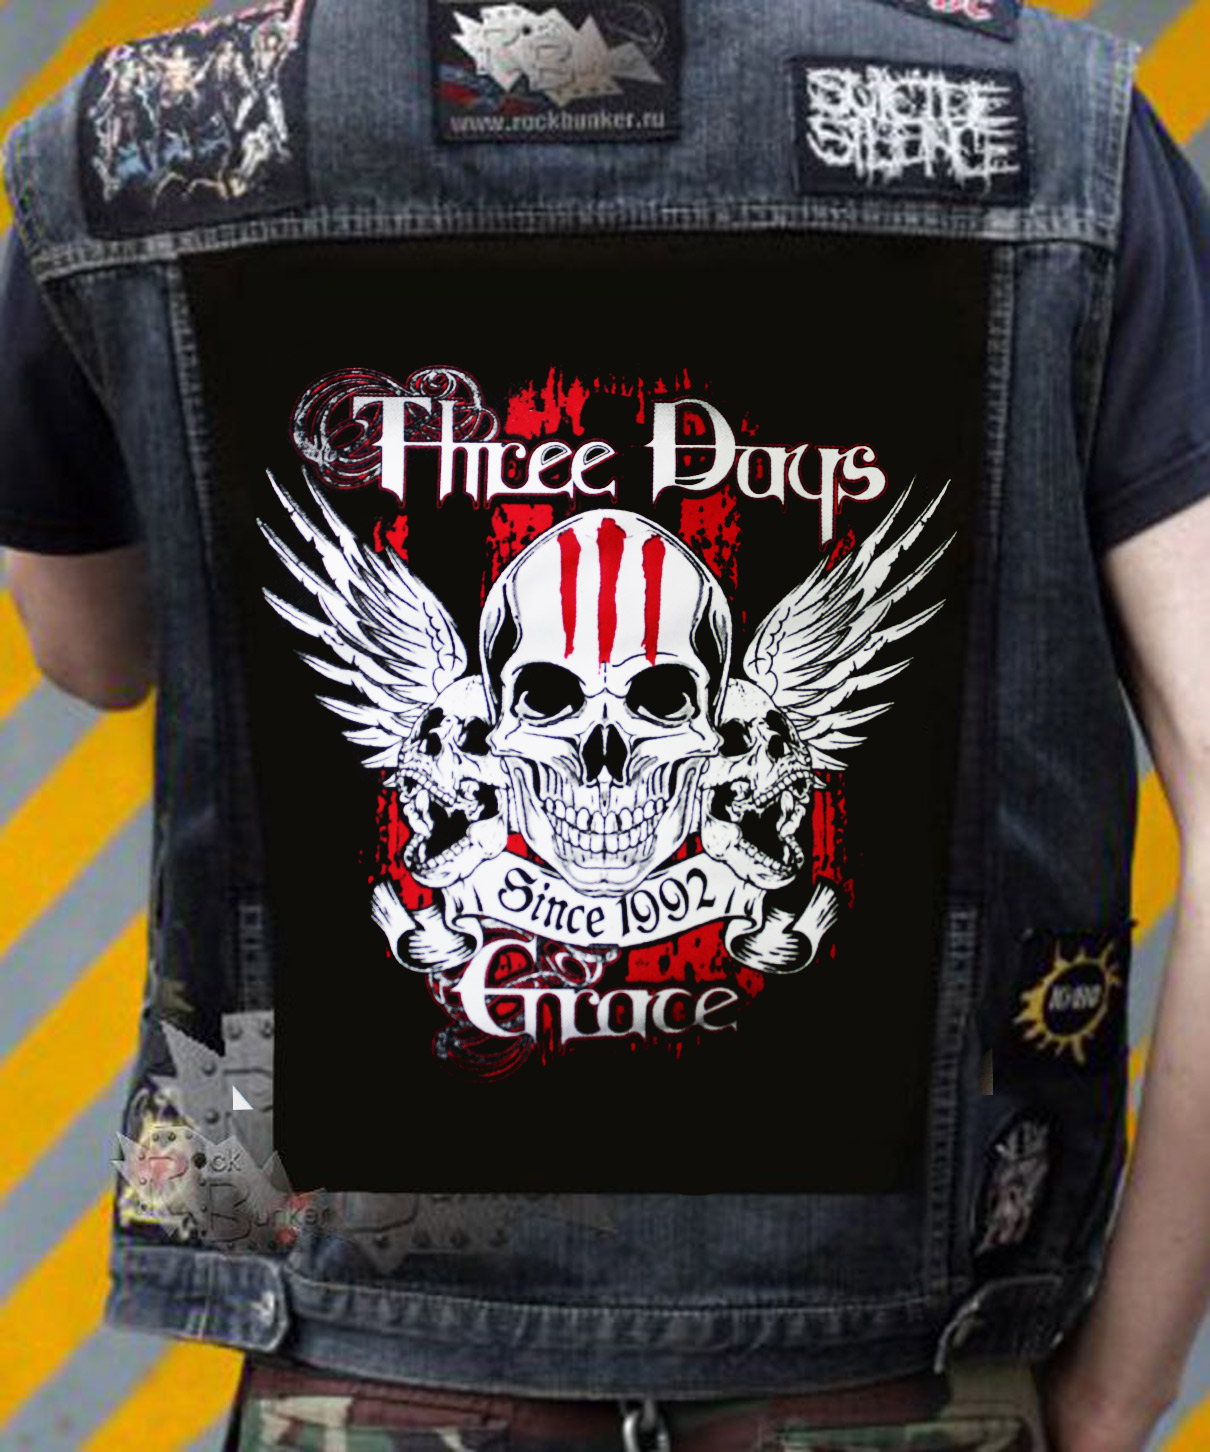 Нашивка Three Days Grace - фото 1 - rockbunker.ru